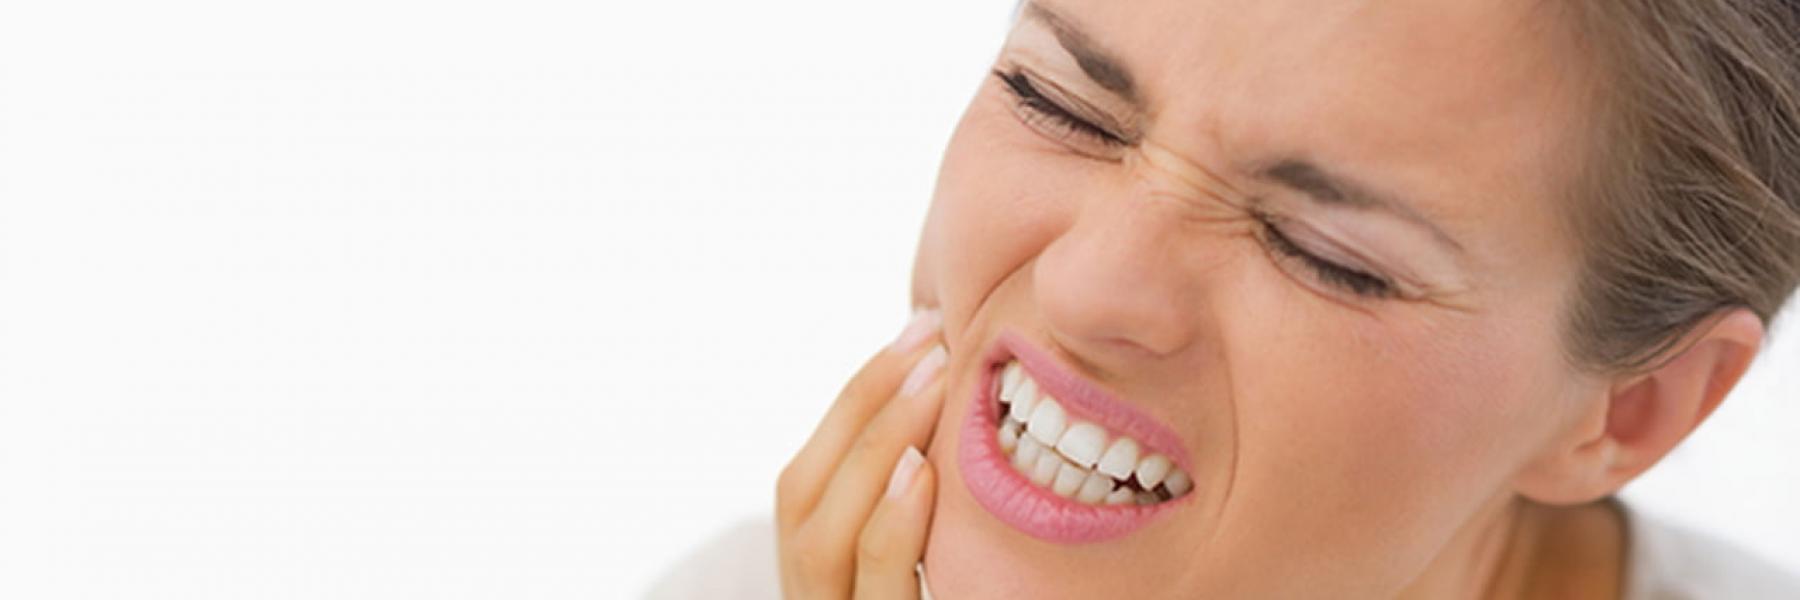 علاج وجع الأسنان بالأعشاب.. إليك أبرز الوصفات الطبيعية للتخلص من الألم